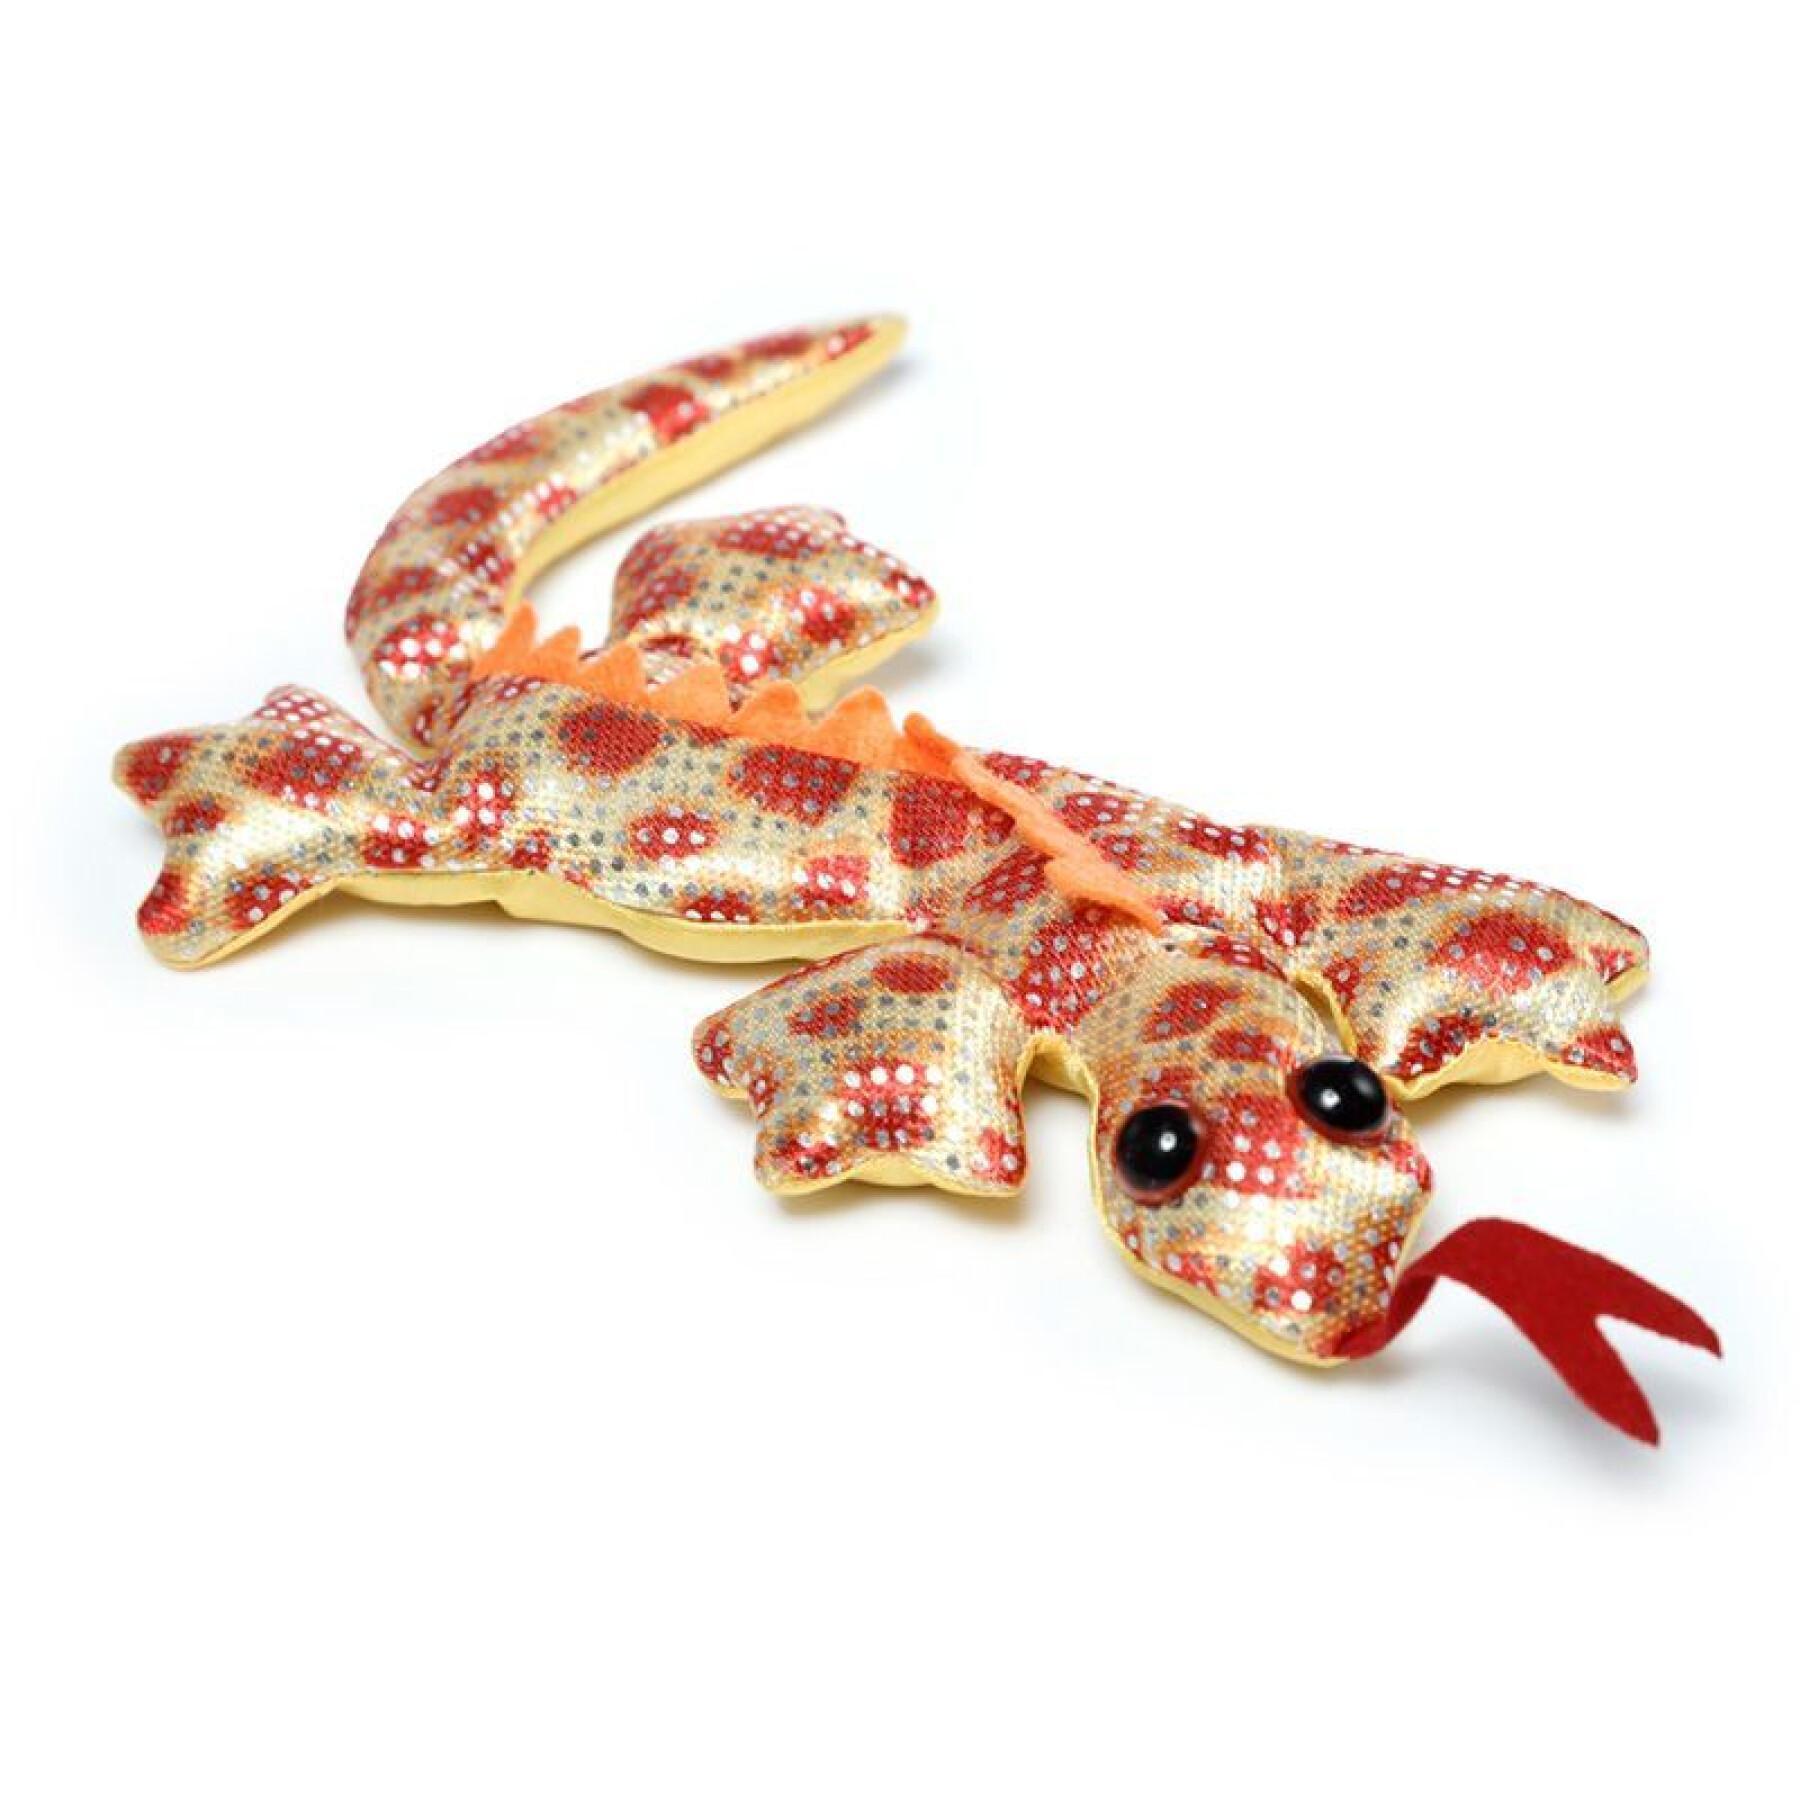 Salamander sand animal figurine Puckator